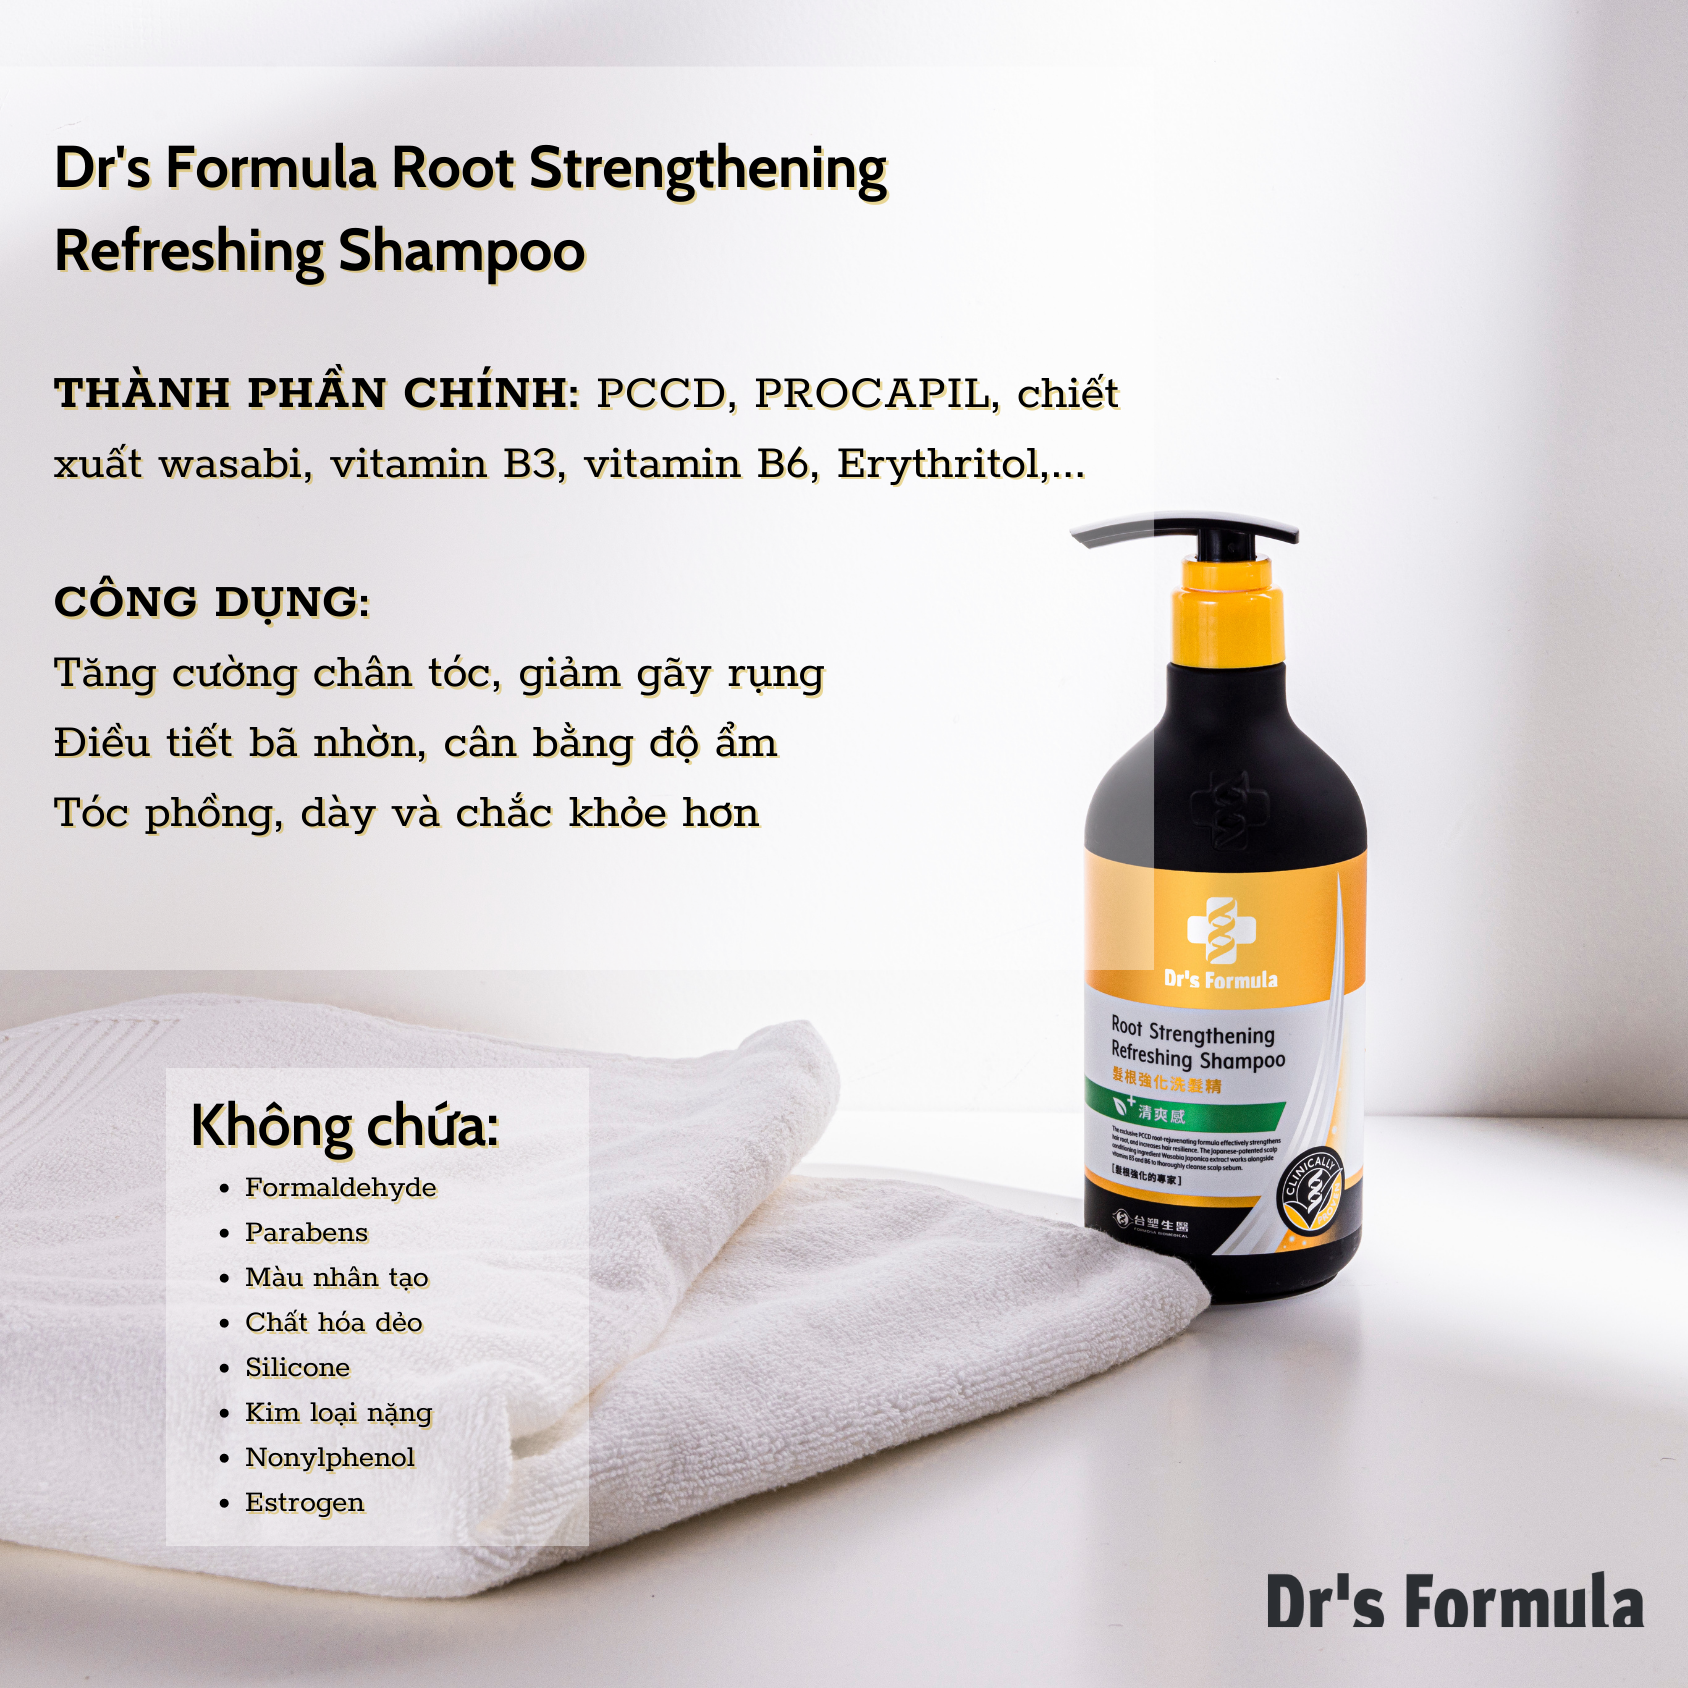 Dầu gội tăng cường chân tóc Dr's Formula Root Strengthening Refreshing Shampoo ngăn ngừa gãy rụng